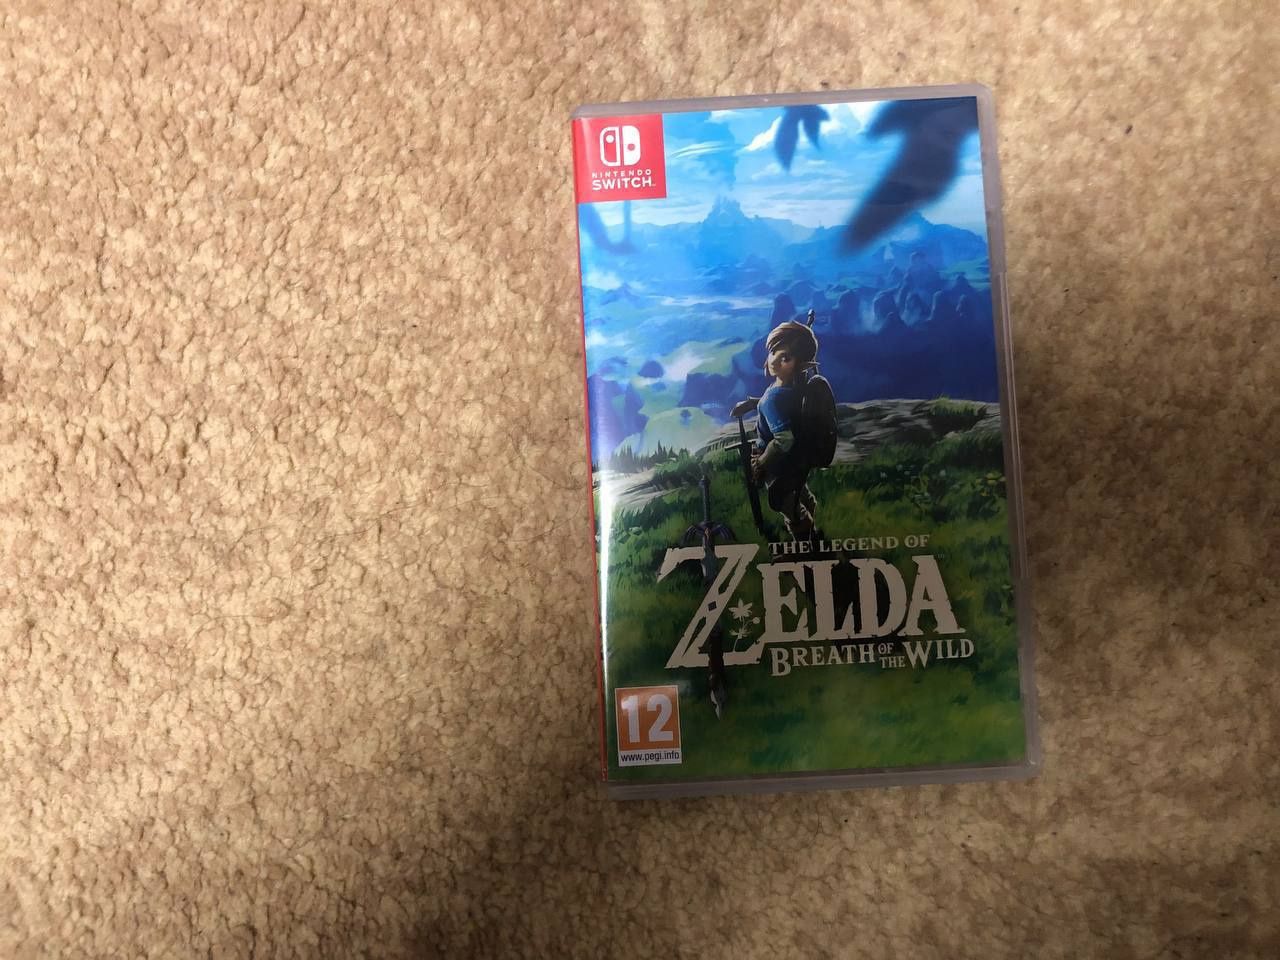 Nintendo switch + The legend of Zelda